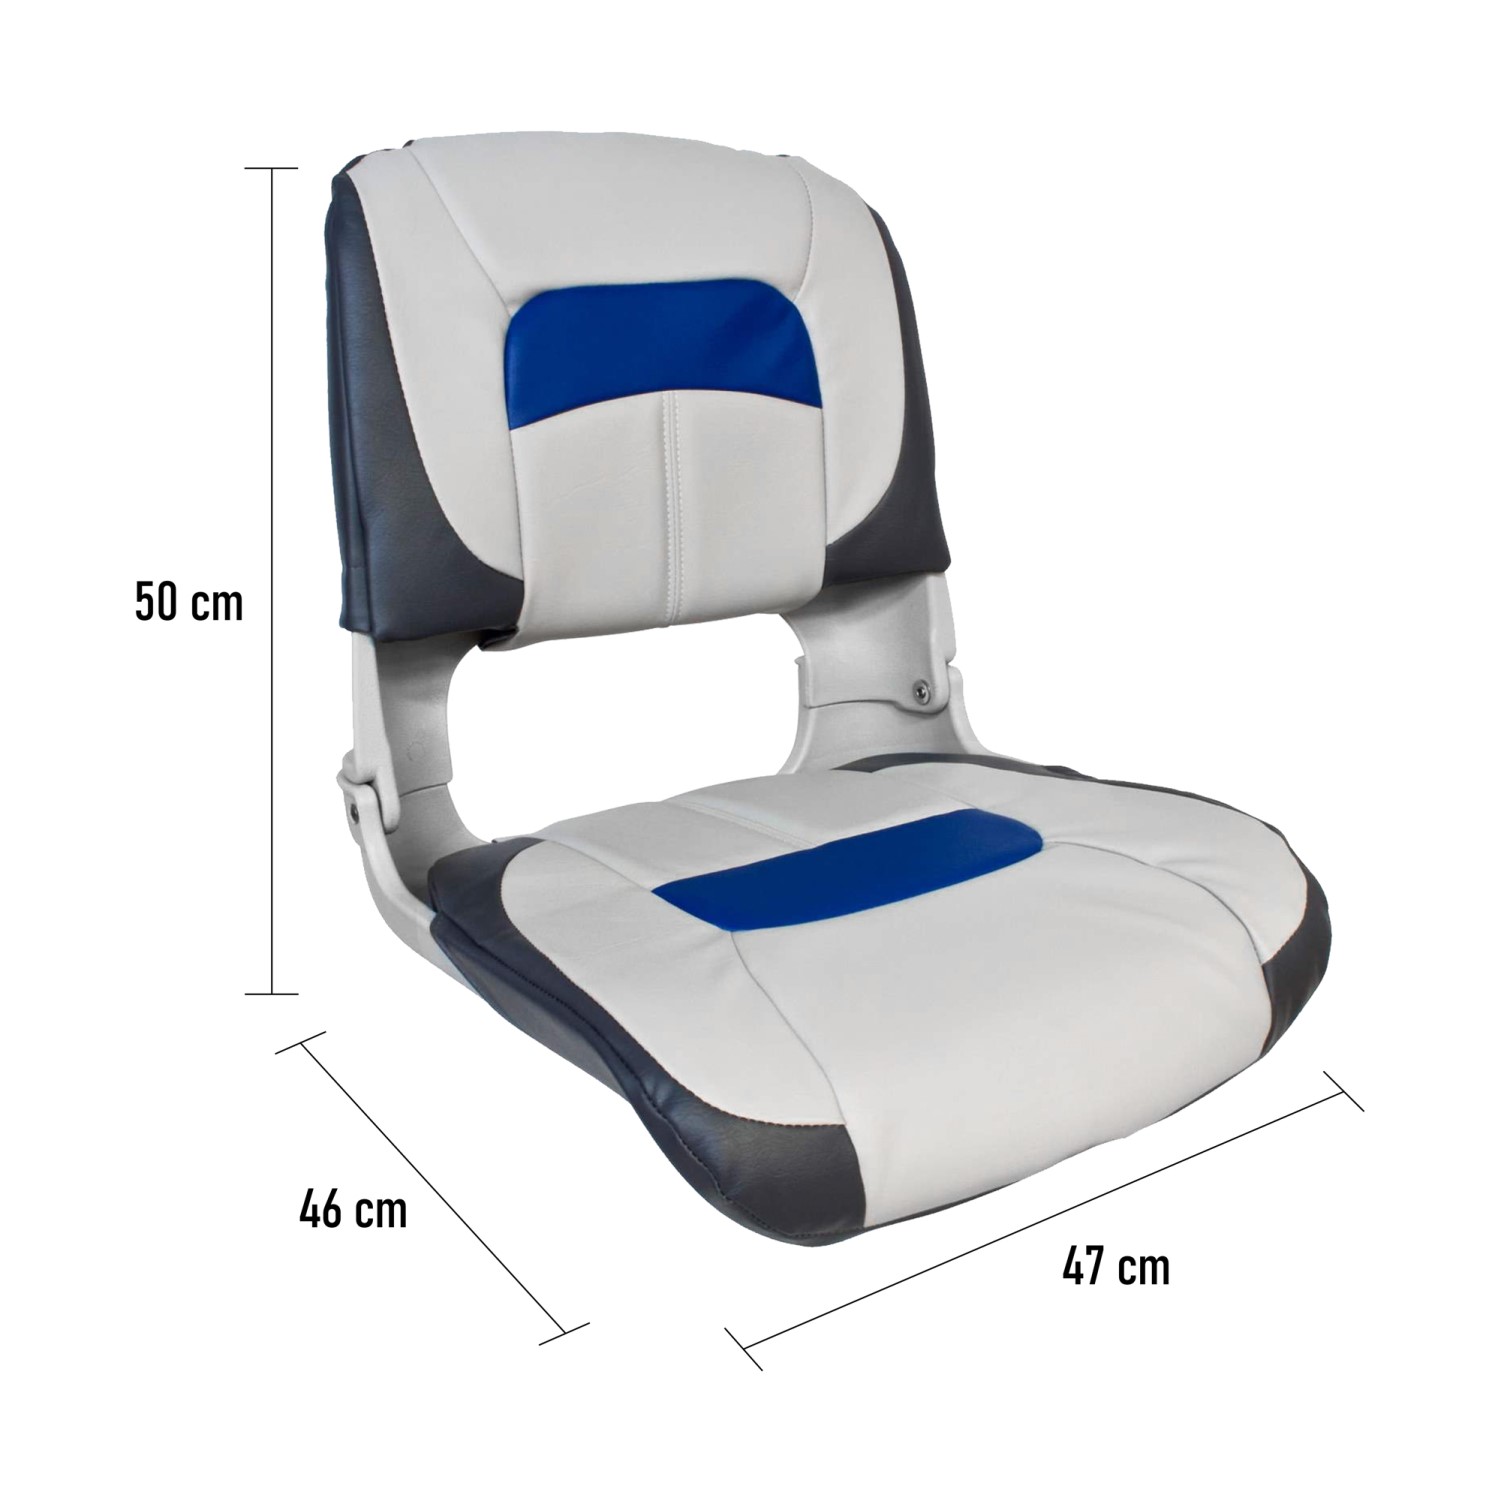 Waterside | Bootssitz | Luxus High Back Comfort Plus | Blau - Weiß - Grau | 47x46x50cm | Kunststoff | Bootssitz